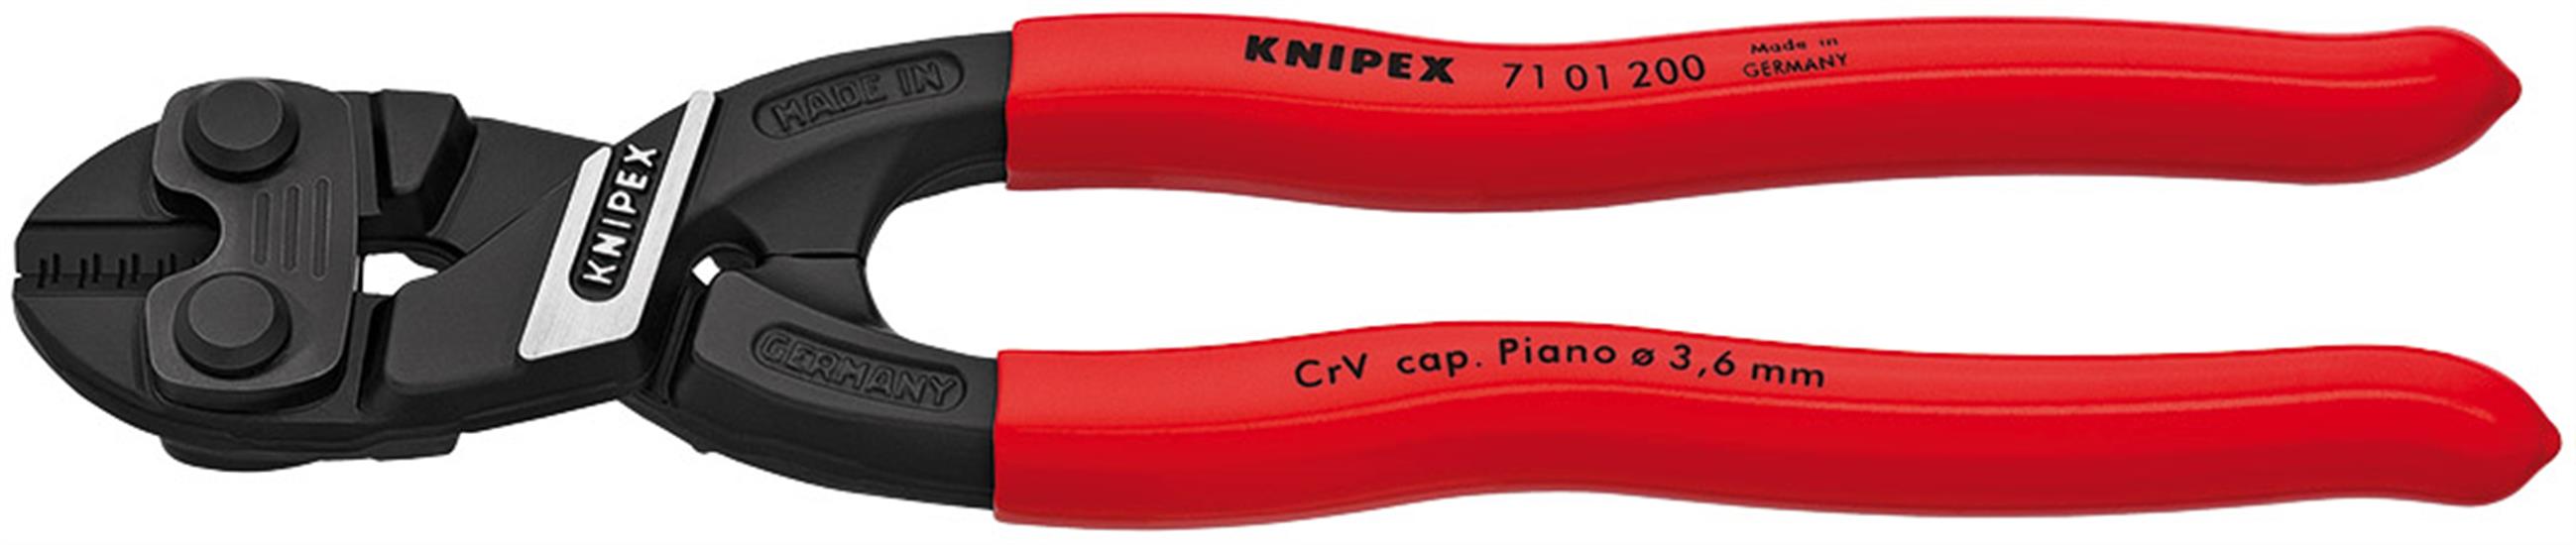 Draper 54223 ⡱ 01 200 SB) - Knipex Cobolt® 71 01 200SBE Compact Bolt Cutter, 200mm